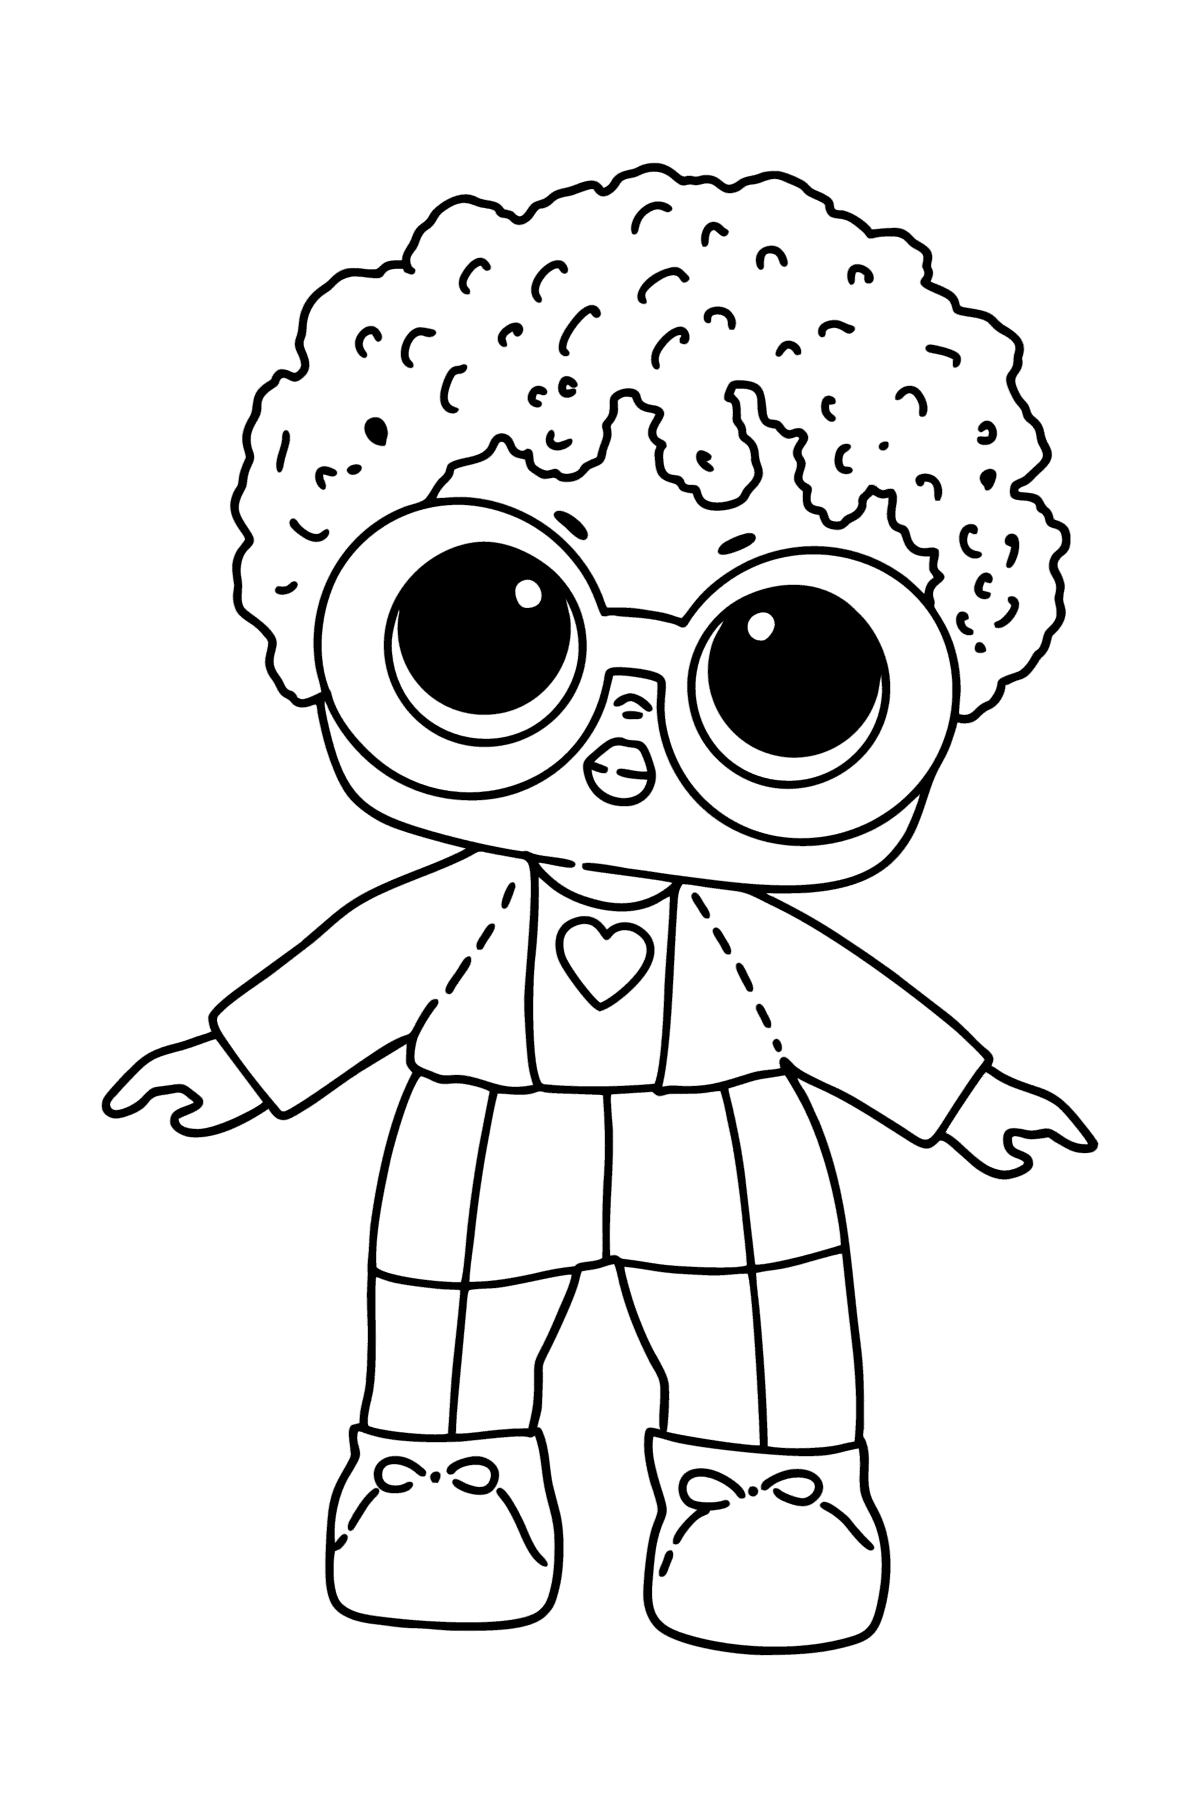 Раскраска LOL Surprise Steezy Кукла Мальчик - Картинки для Детей